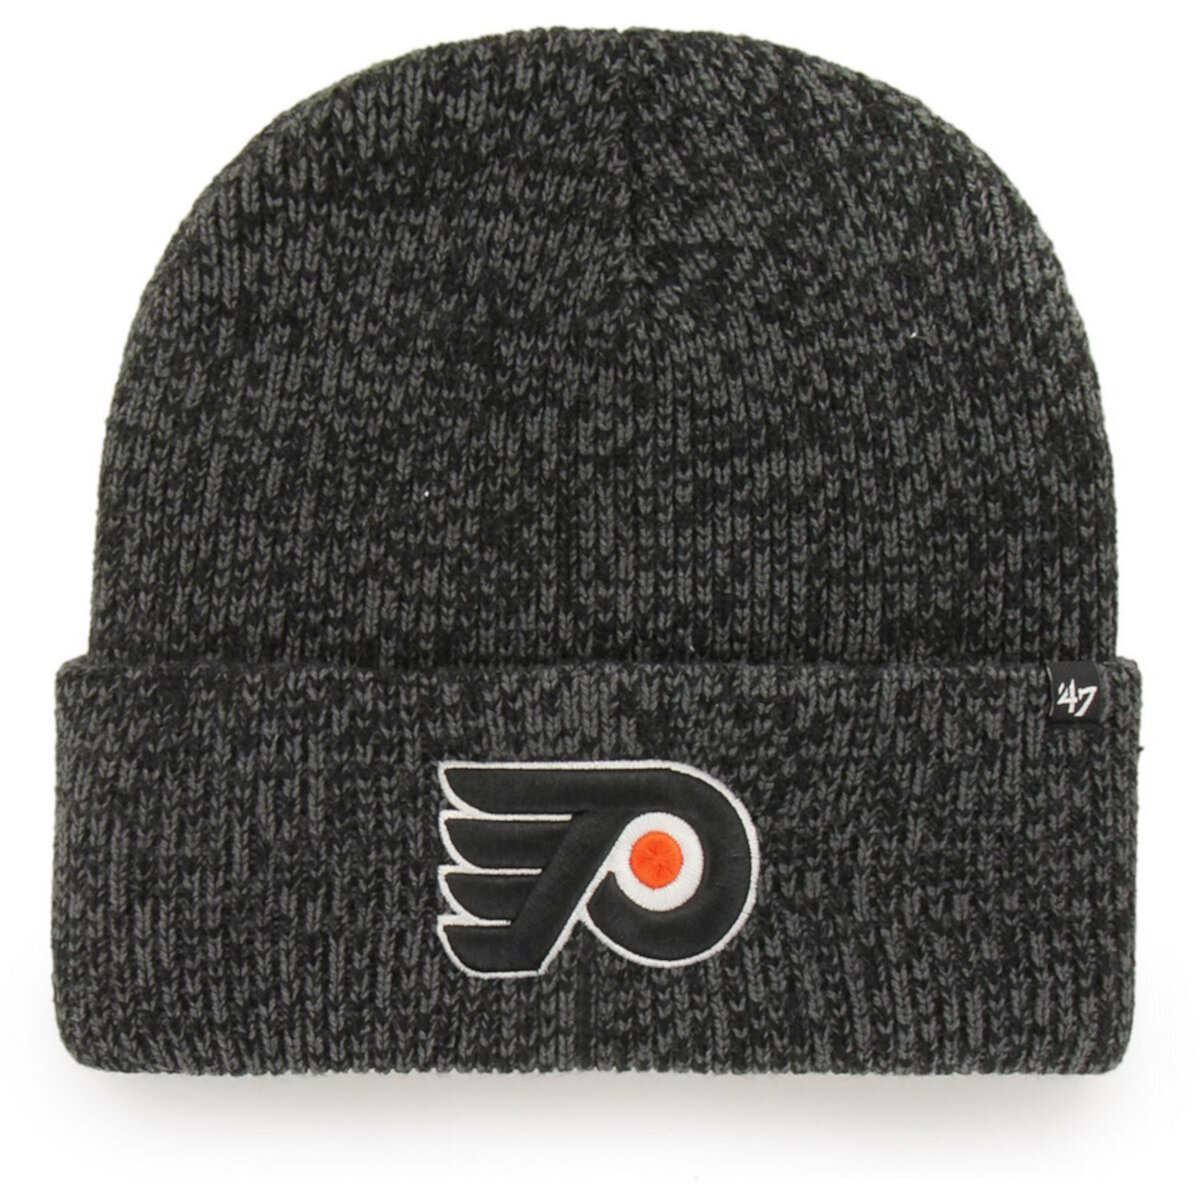 Шапка '47 brand Philadelphia. Шапка Flyers 47 brand. Шапка Flyers 2014. Knit hat 47 Flyers Orange.